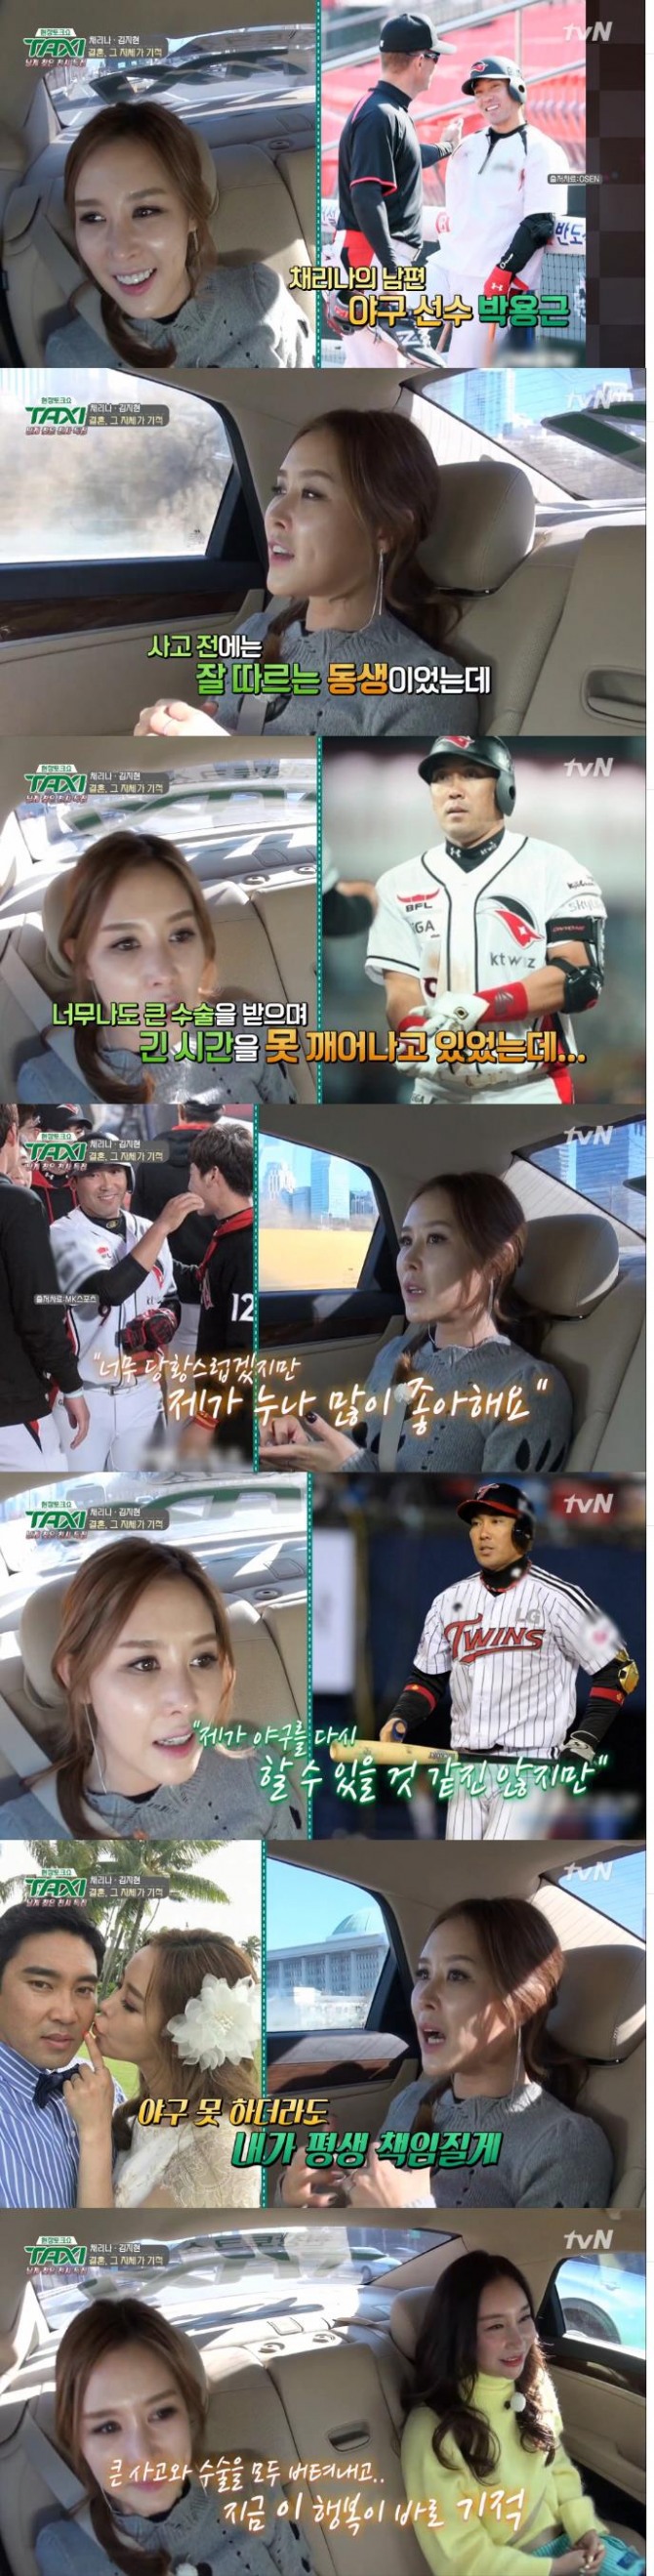 11일 방송된 tvN '현장토크쇼 택시'에는 룰라 멤버 채리나와 김지현이 출연, 결혼에 대해 진솔하게 밝혔다./사진=tvN,방송 캡처